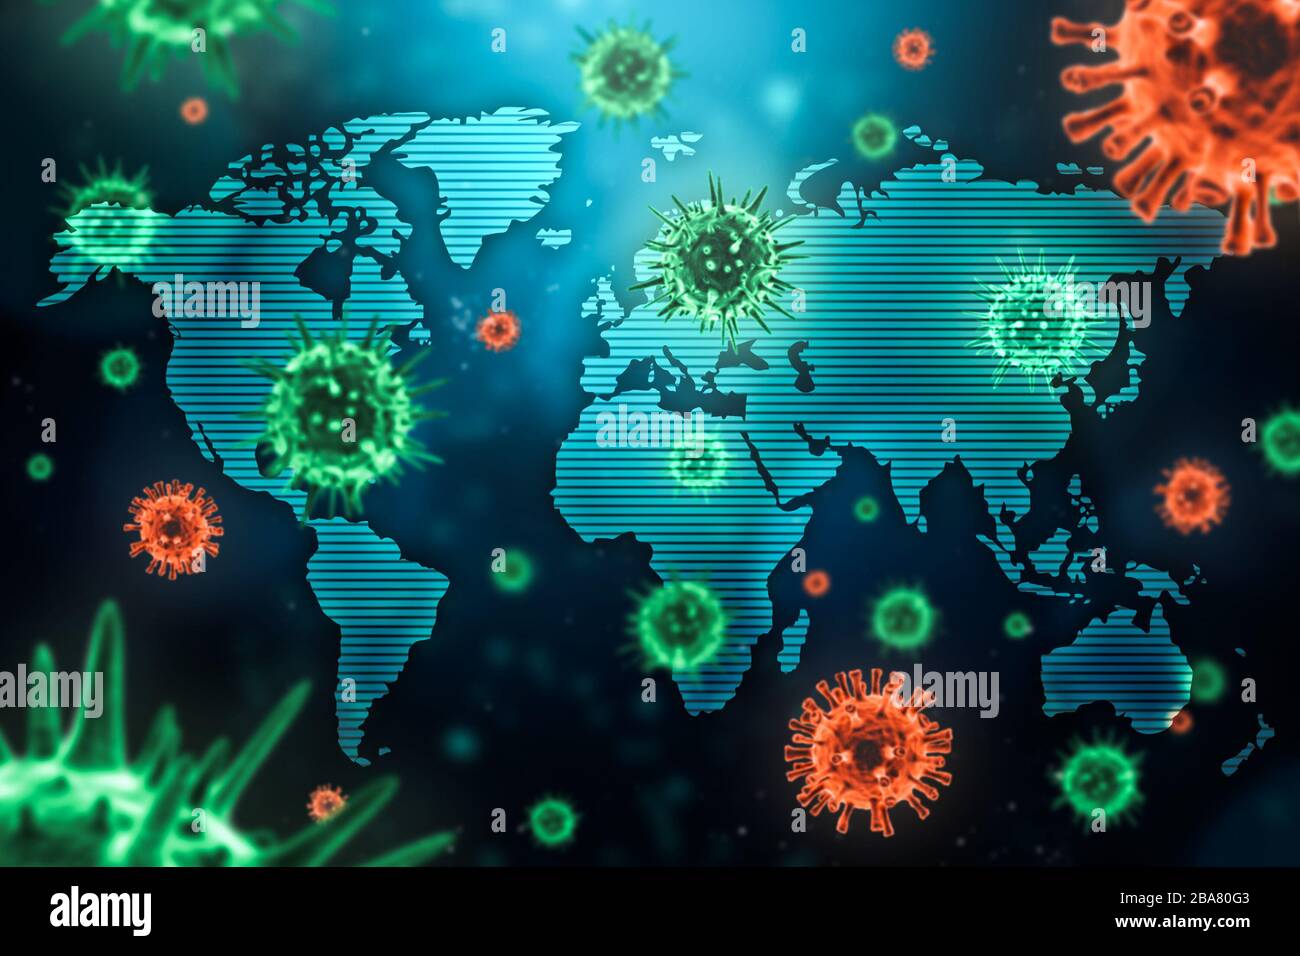 Épidémie virale ou propagation de pandémie dans le monde concept avec cellules microscopiques de virus et la carte mondiale. Santé, médecine, contagion mondiale an Banque D'Images